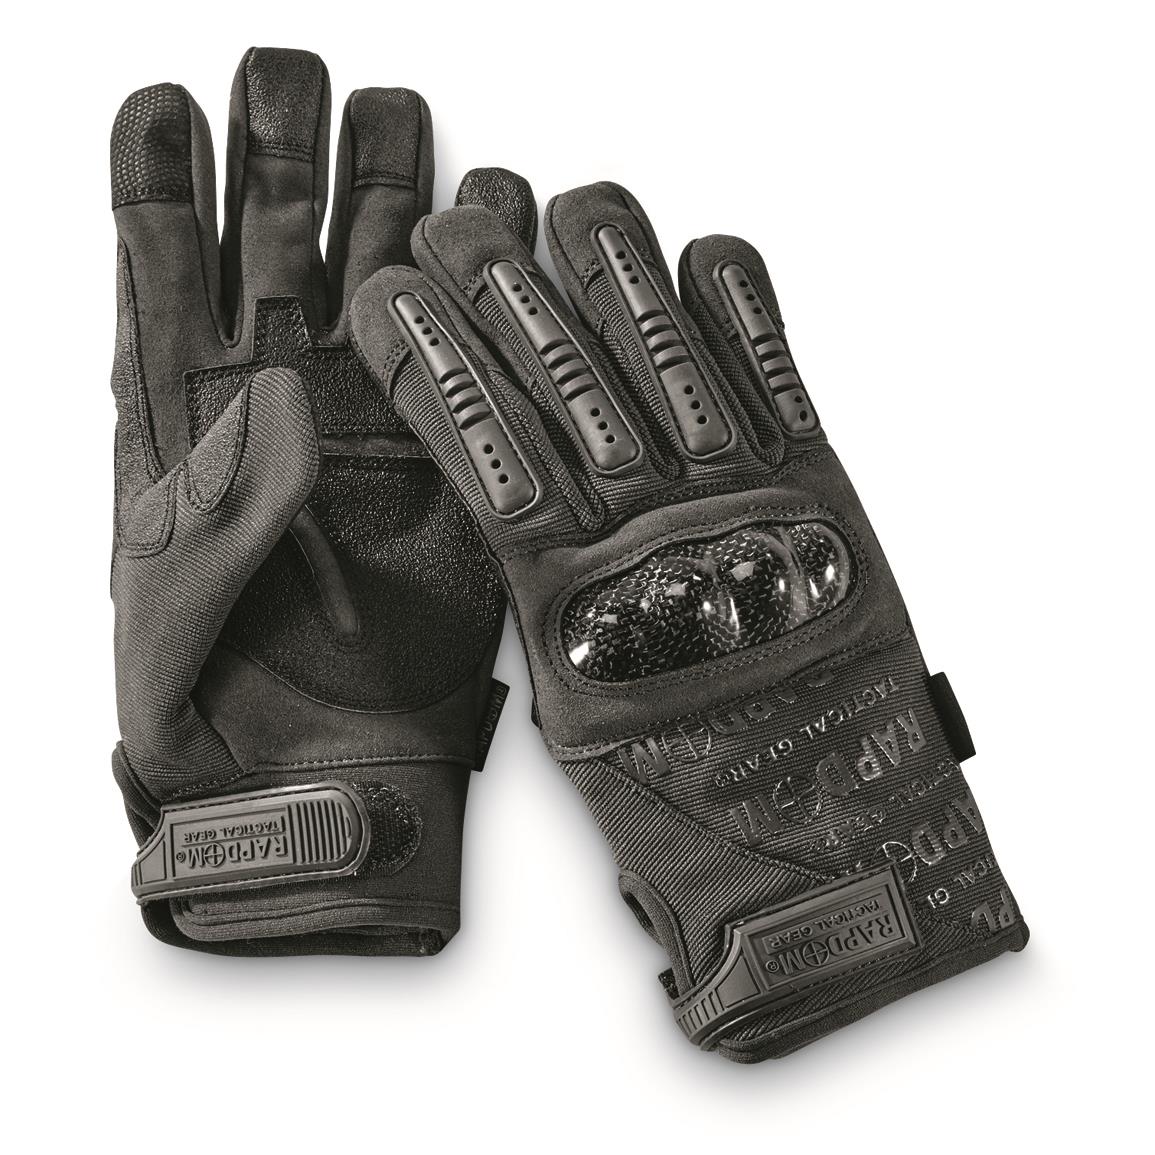 Rapid Dominance Carbon Fiber Knuckle Combat Gloves, Black